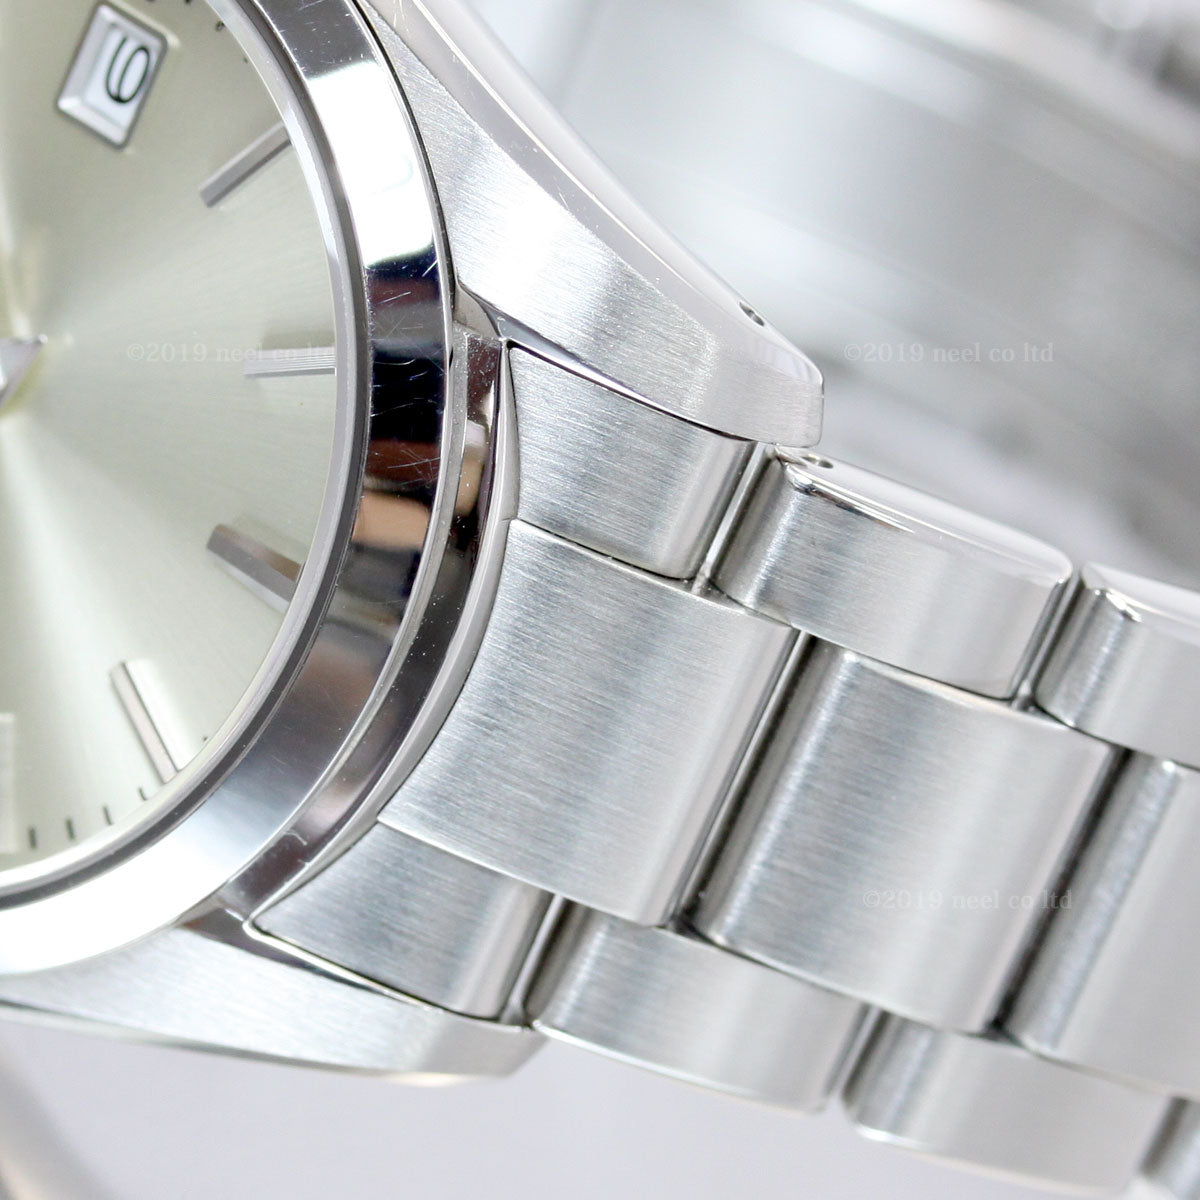 グランドセイコー GRAND SEIKO 腕時計 メンズ レディース SBGX263 STGF265 ペアモデル【正規品】【36回無金利ローン】